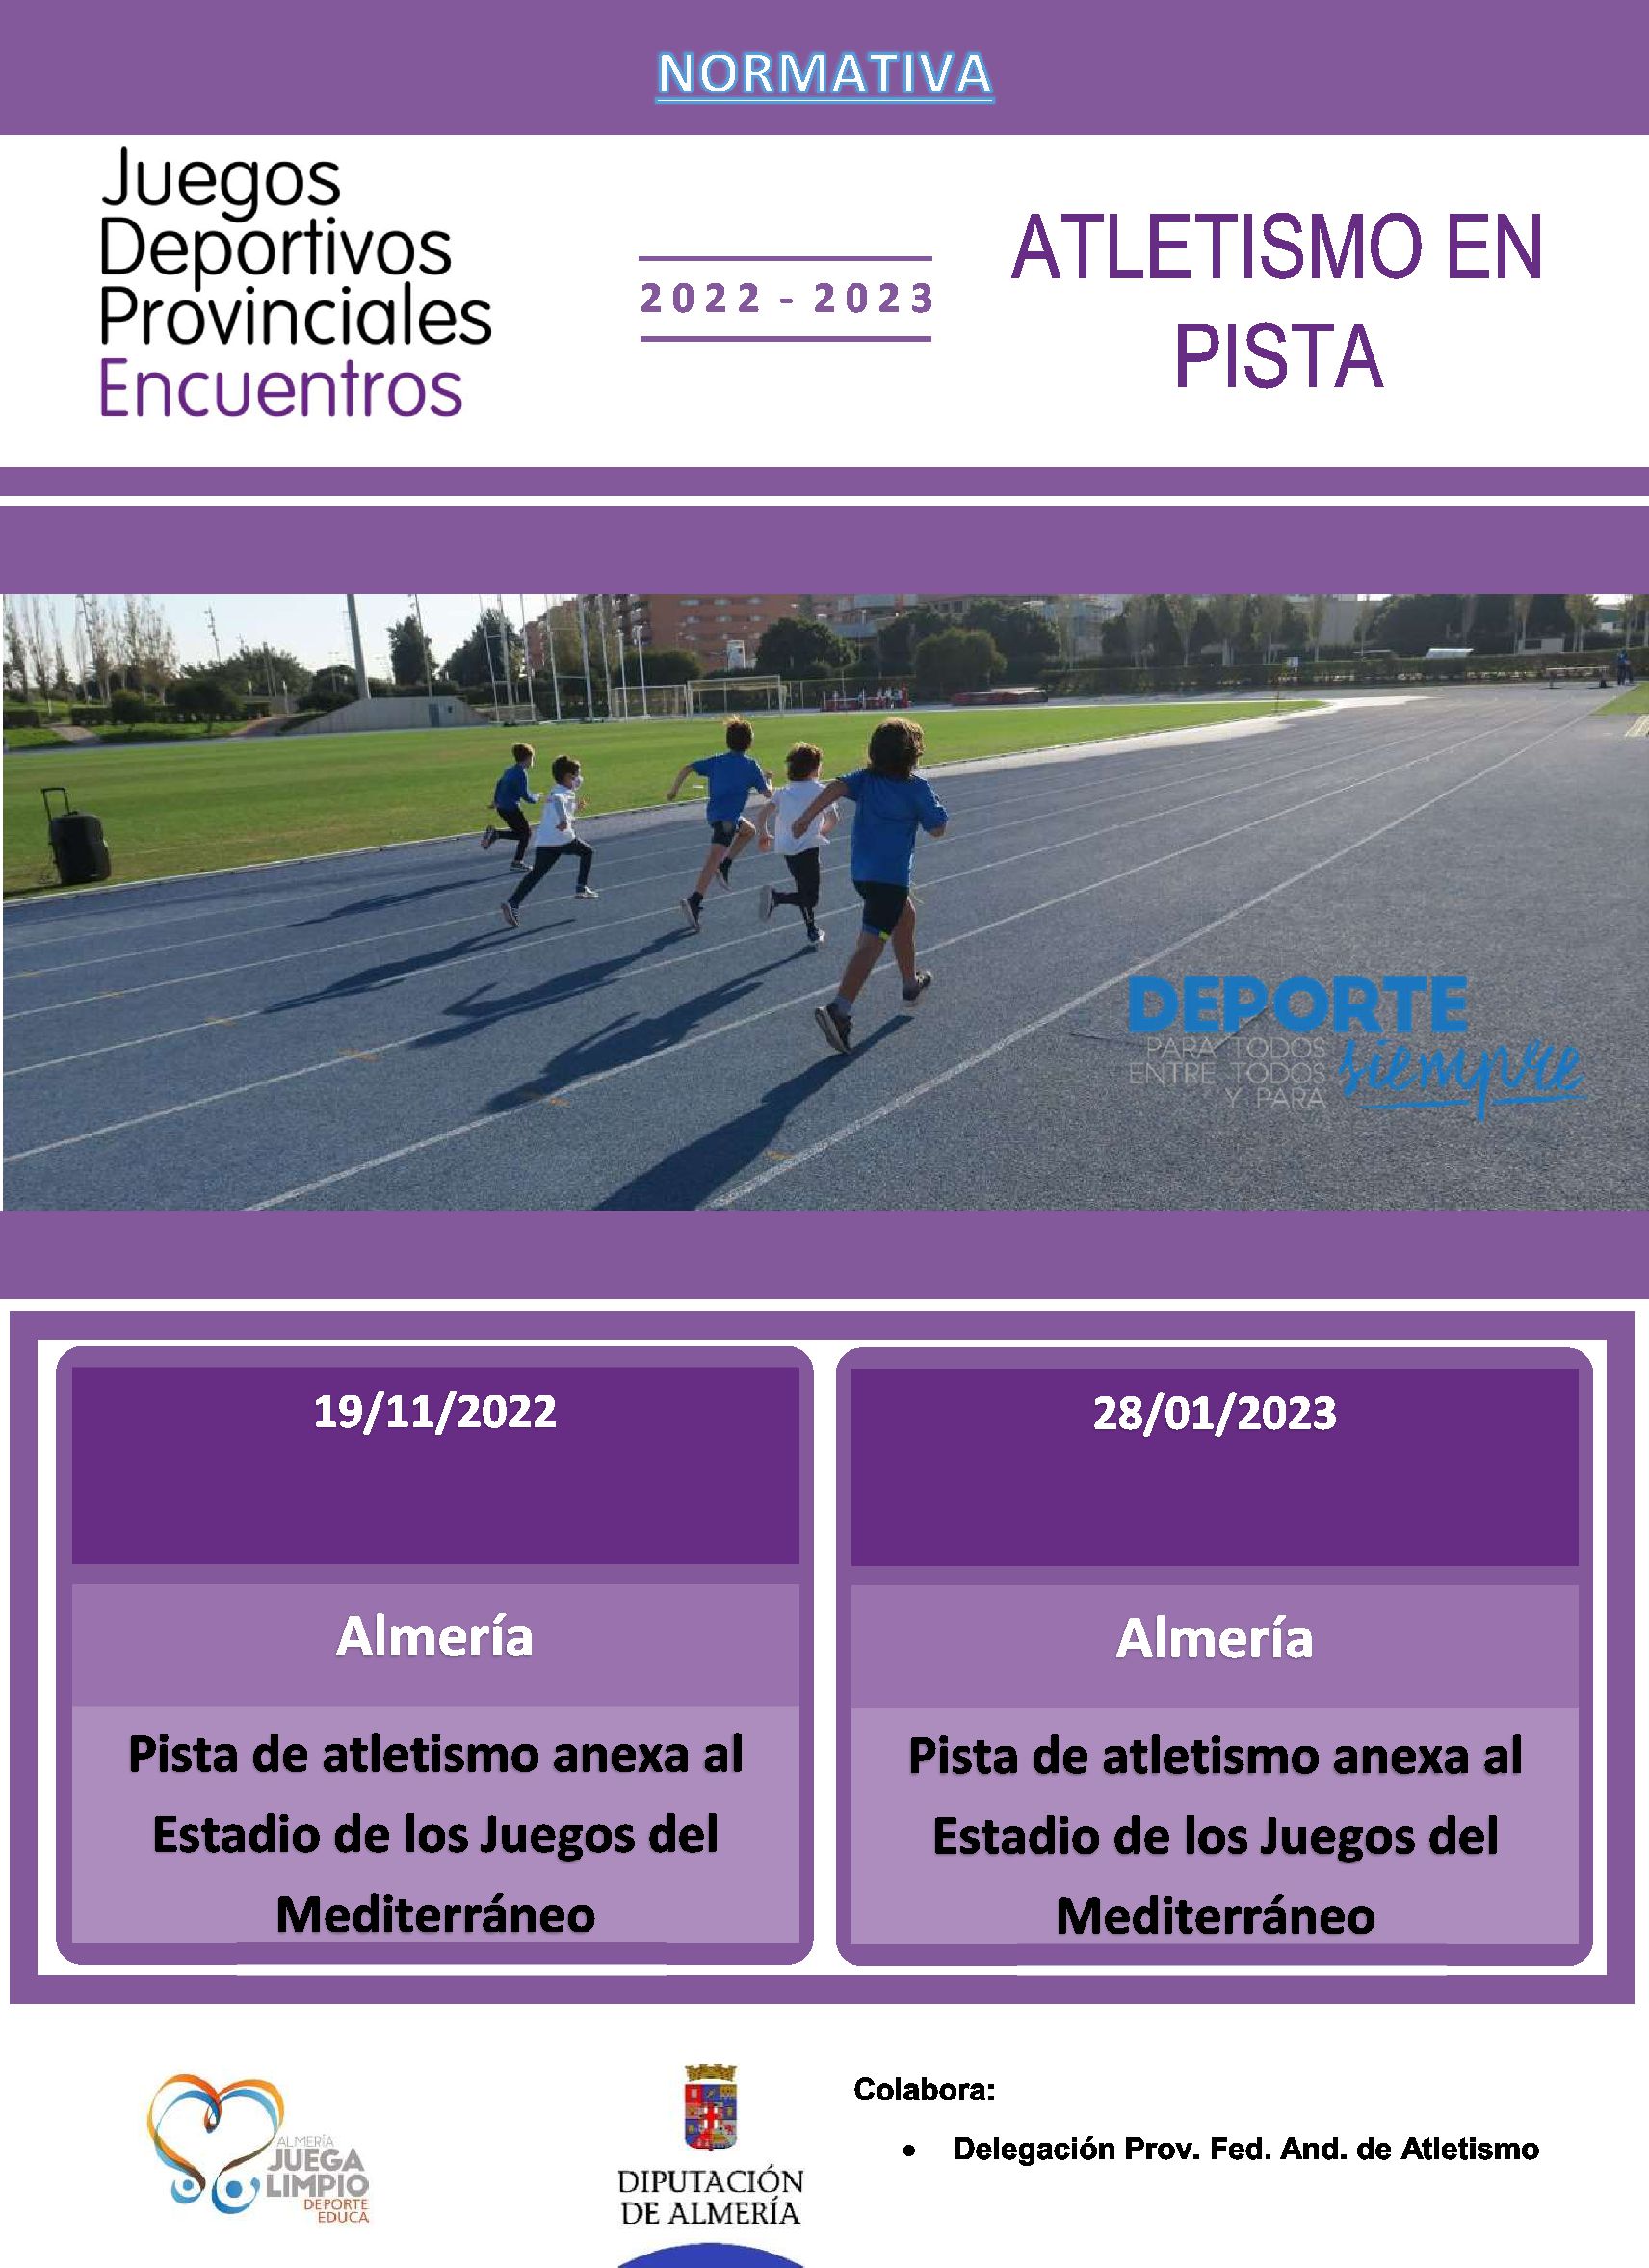 Encuentros Educativos de Promoción  Atletismo en pista. Almería 28-01-23